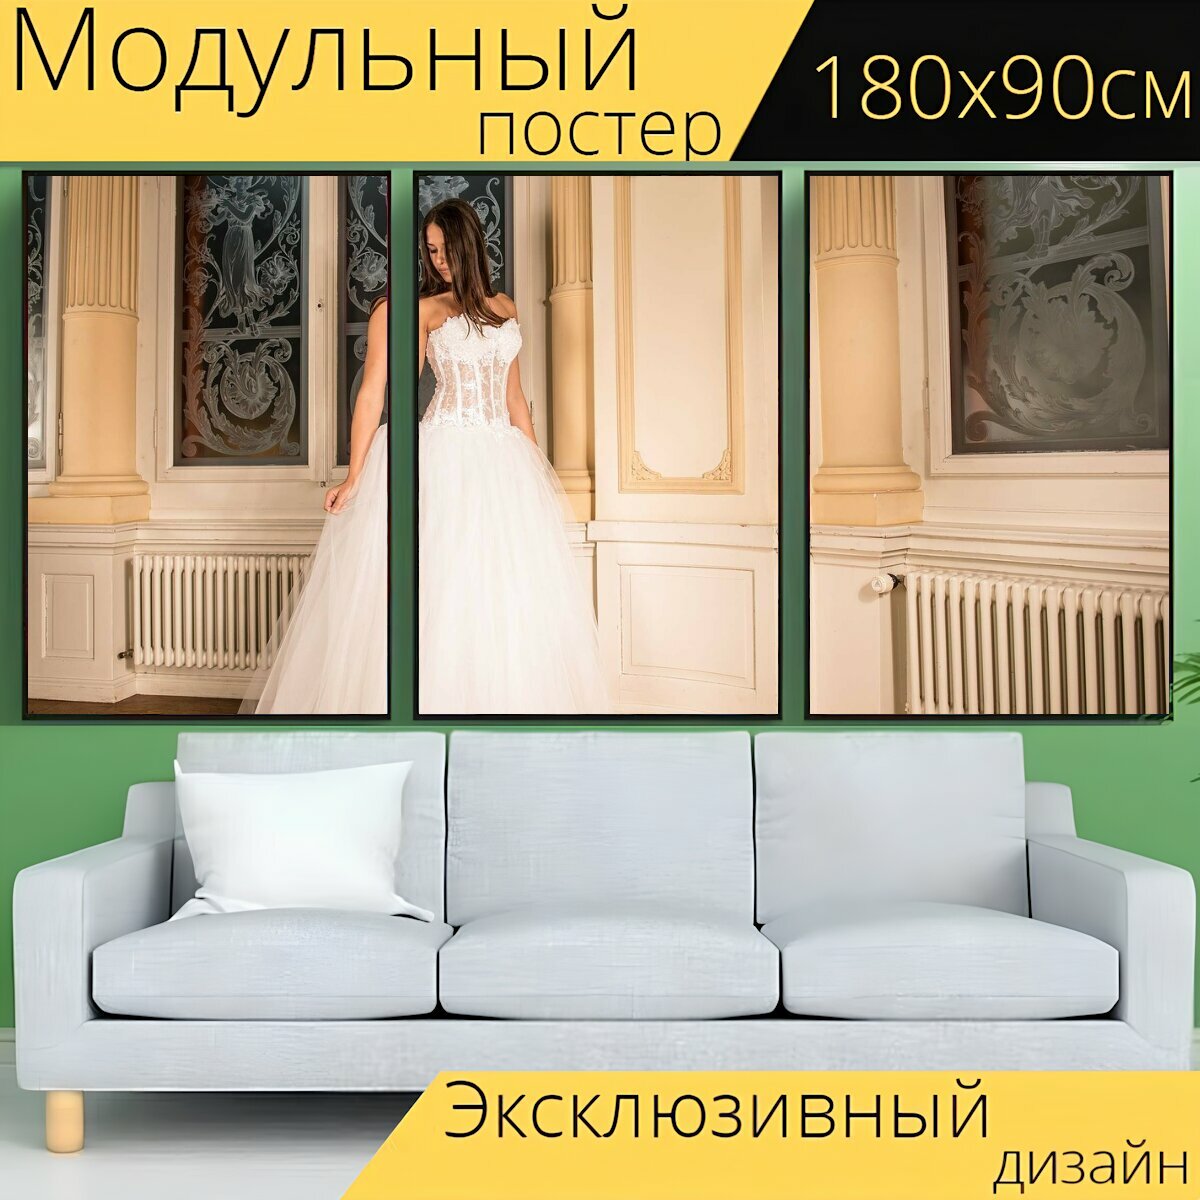 Модульный постер "Свадебное платье, невеста, брак" 180 x 90 см. для интерьера